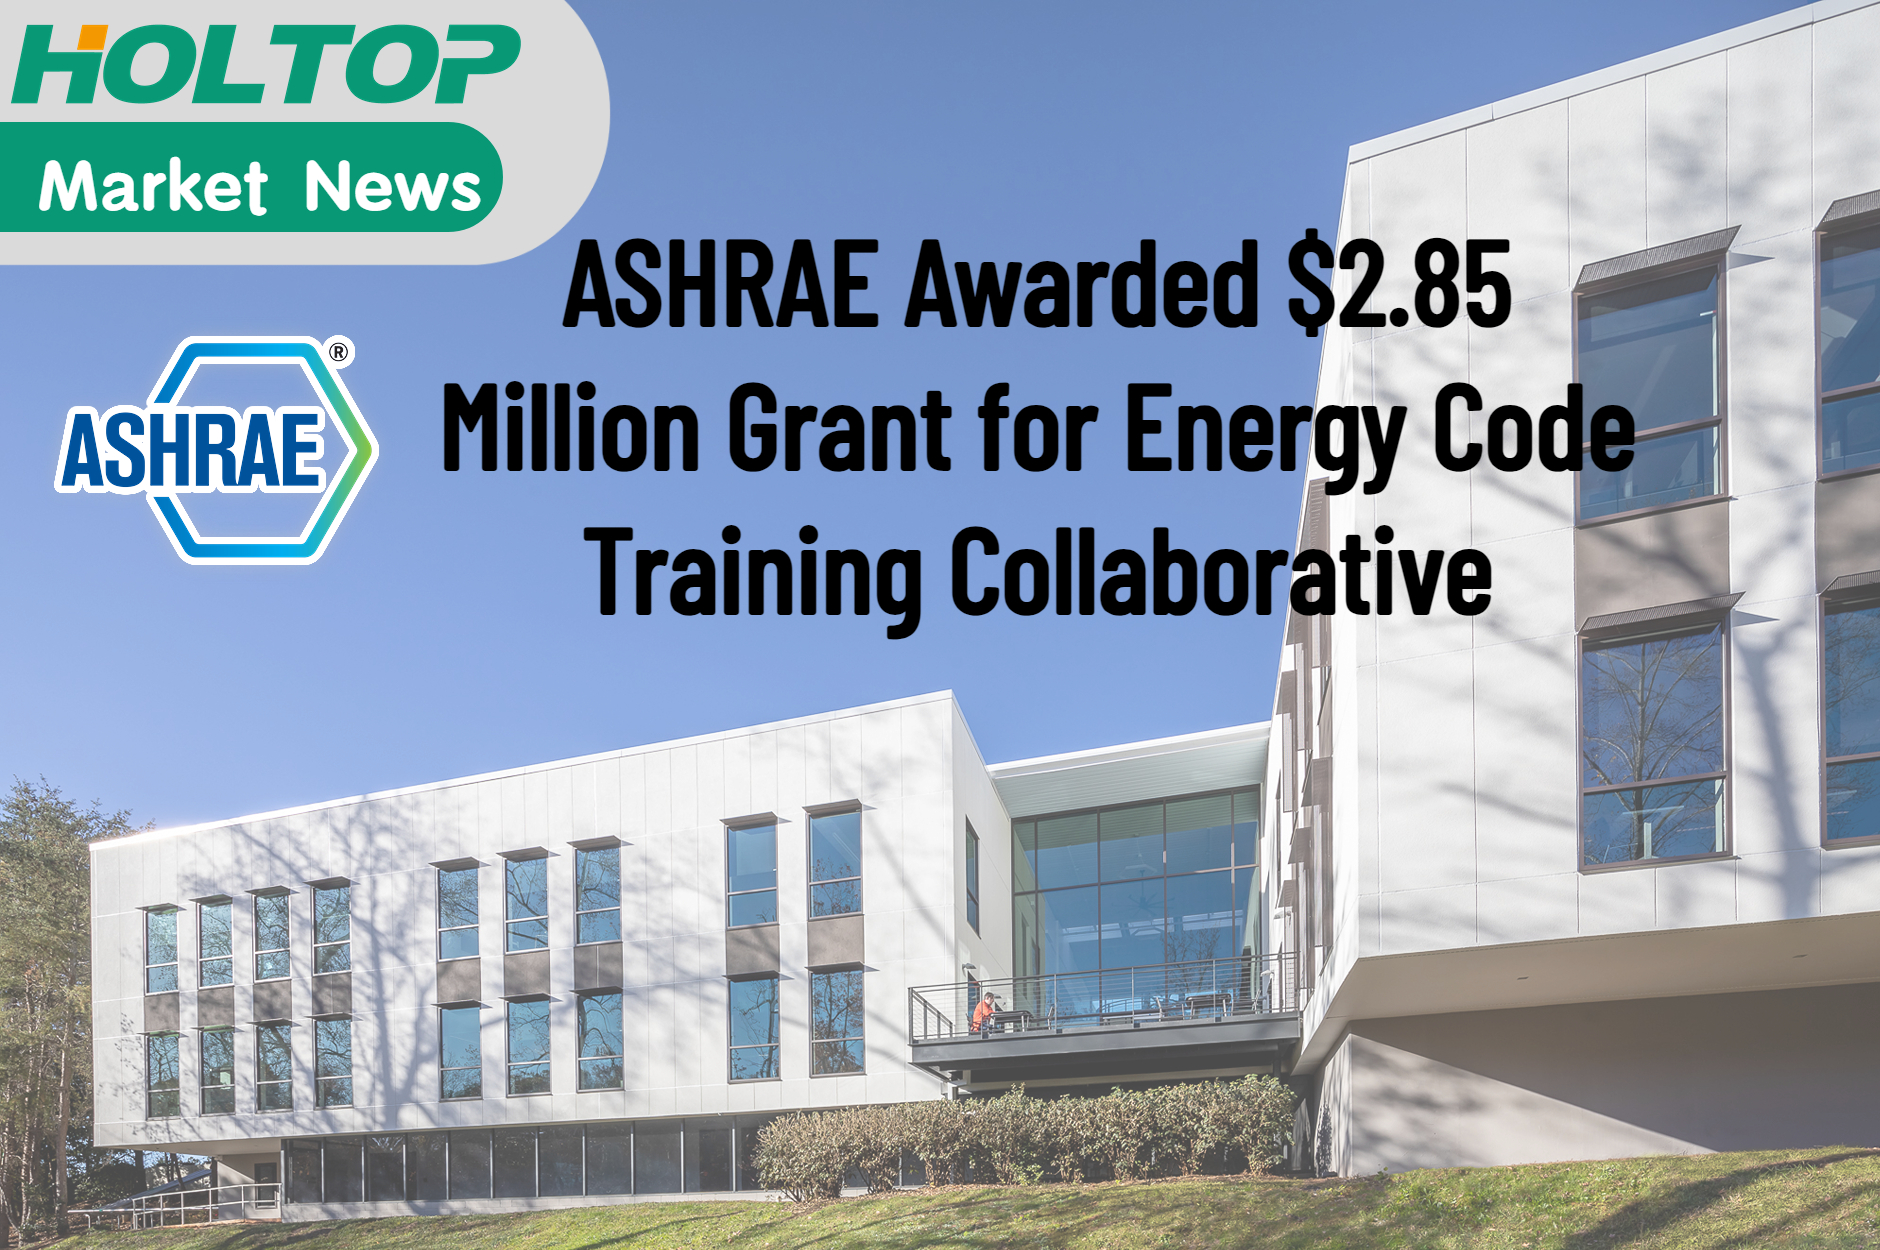 ASHRAE udělil grant ve výši 2,85 milionu USD za spolupráci v oblasti školení Energy Code